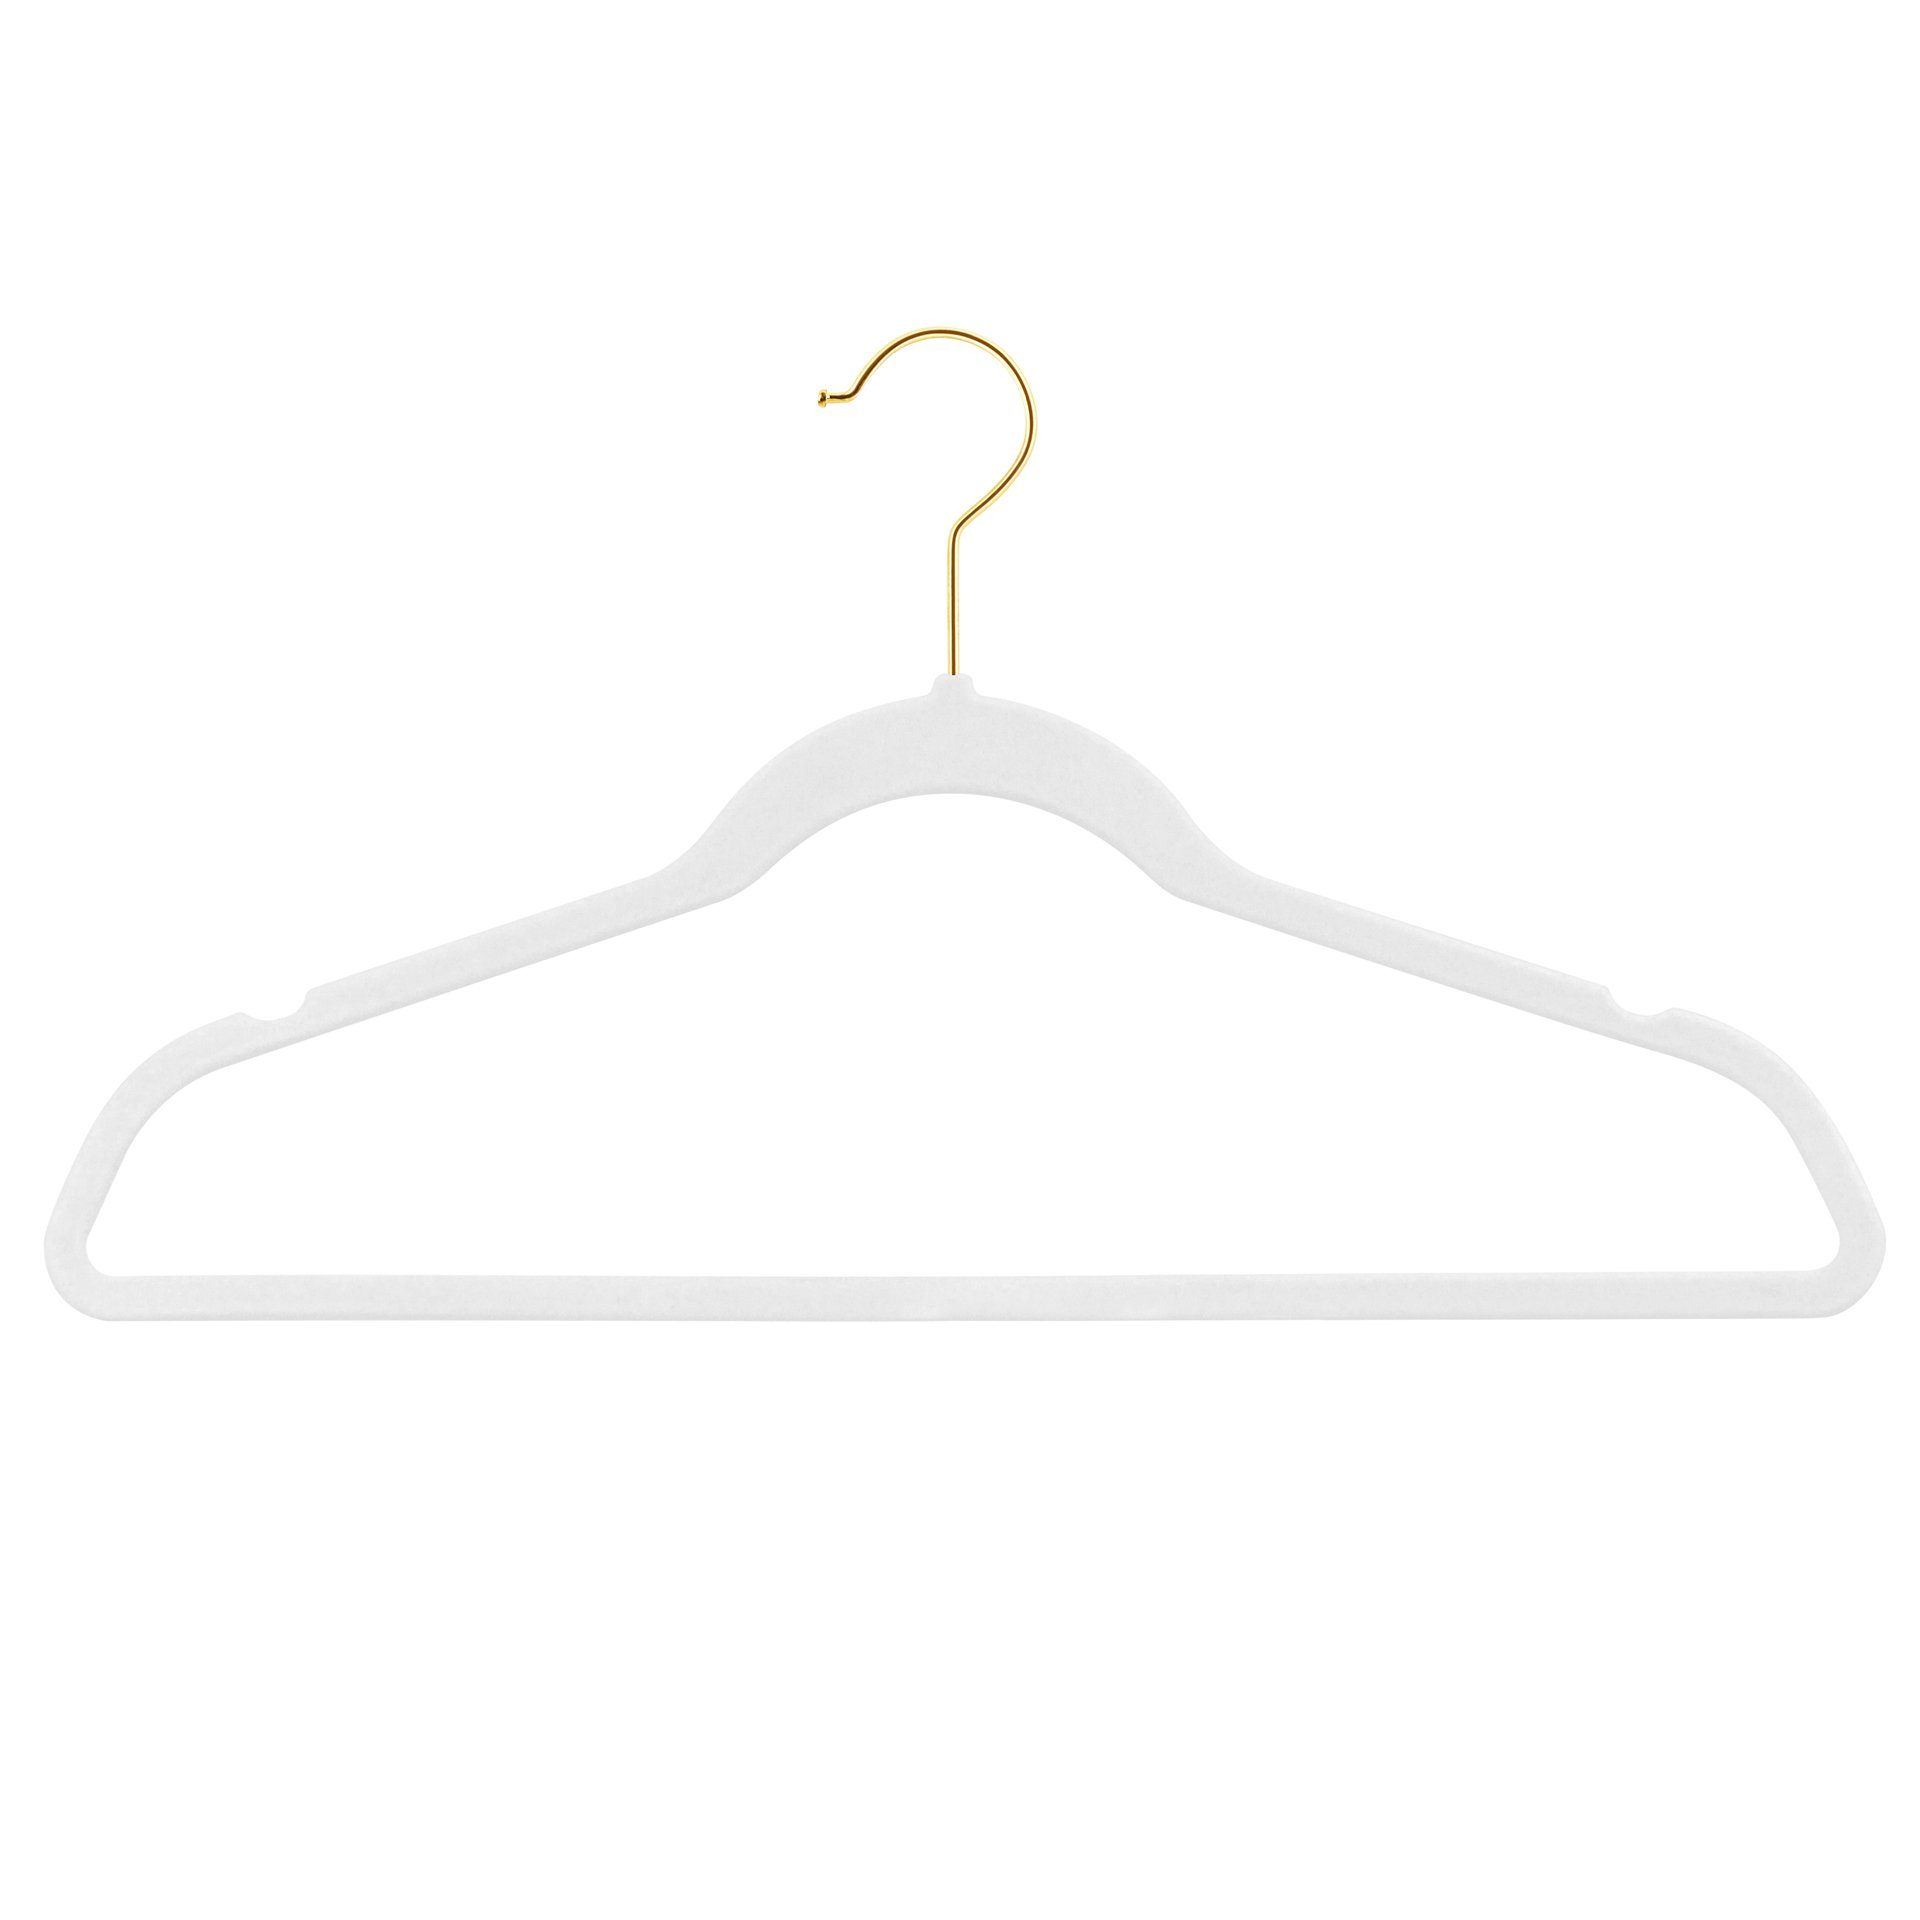 StickandShine Kleiderbügel Samt Kleiderbügel verschiedenen Farben zur Wahl mit verschiedenen Haken Farben (Gold, Schwarz, Rosegold, Zink Silber, Weiß) moderne luxus Bügel